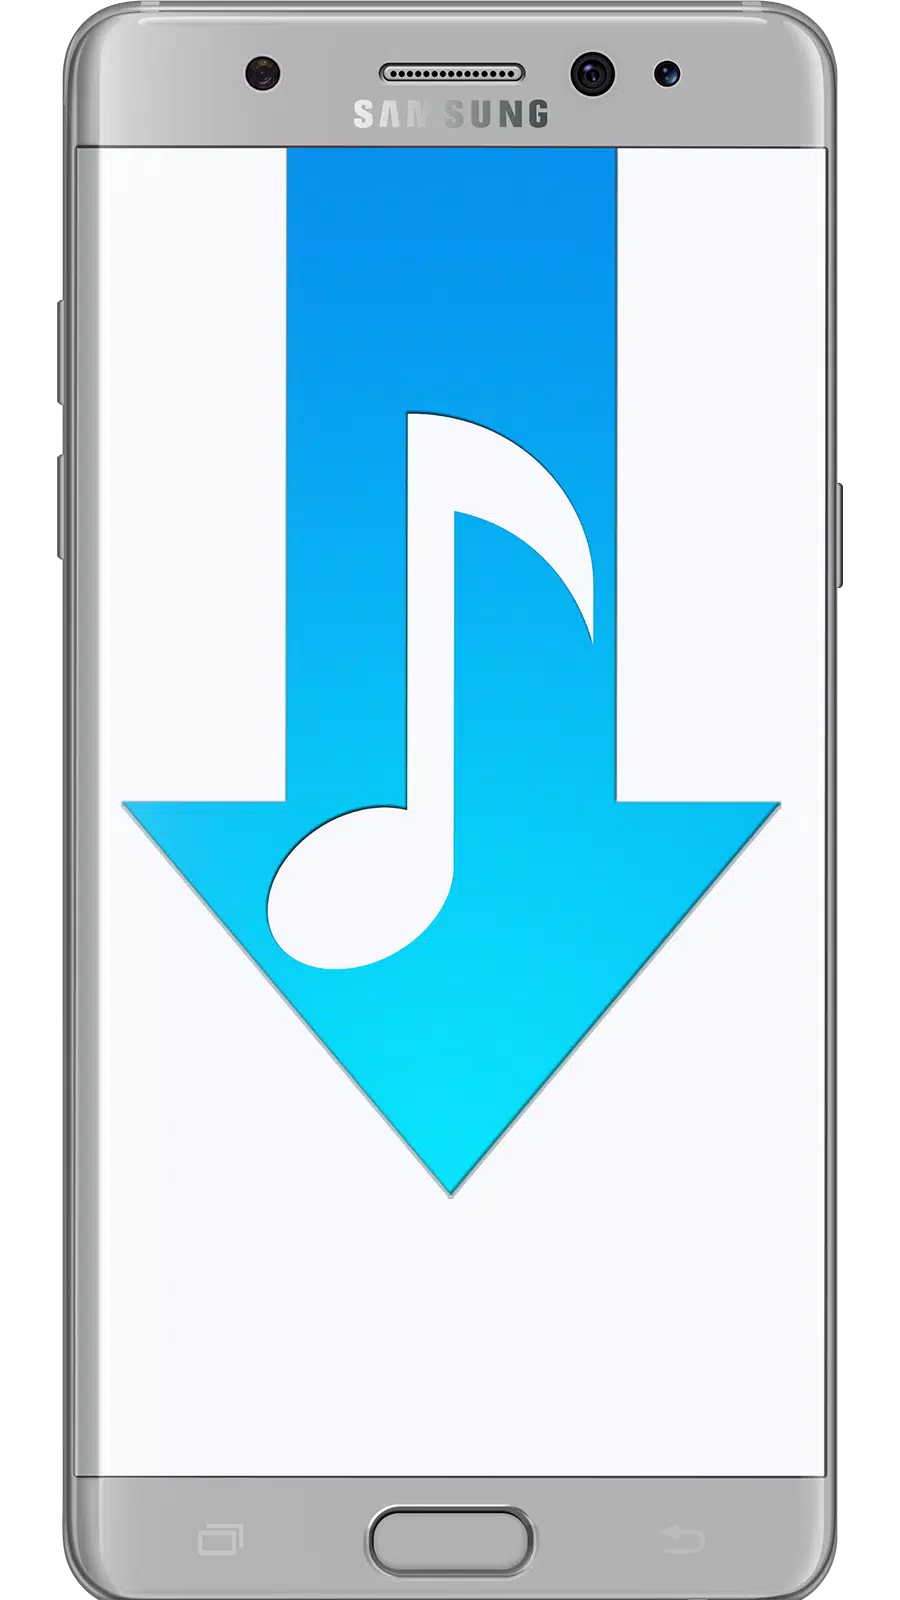 Bedava Müzik İndir | Klip MP3 İndir für Android - APK herunterladen